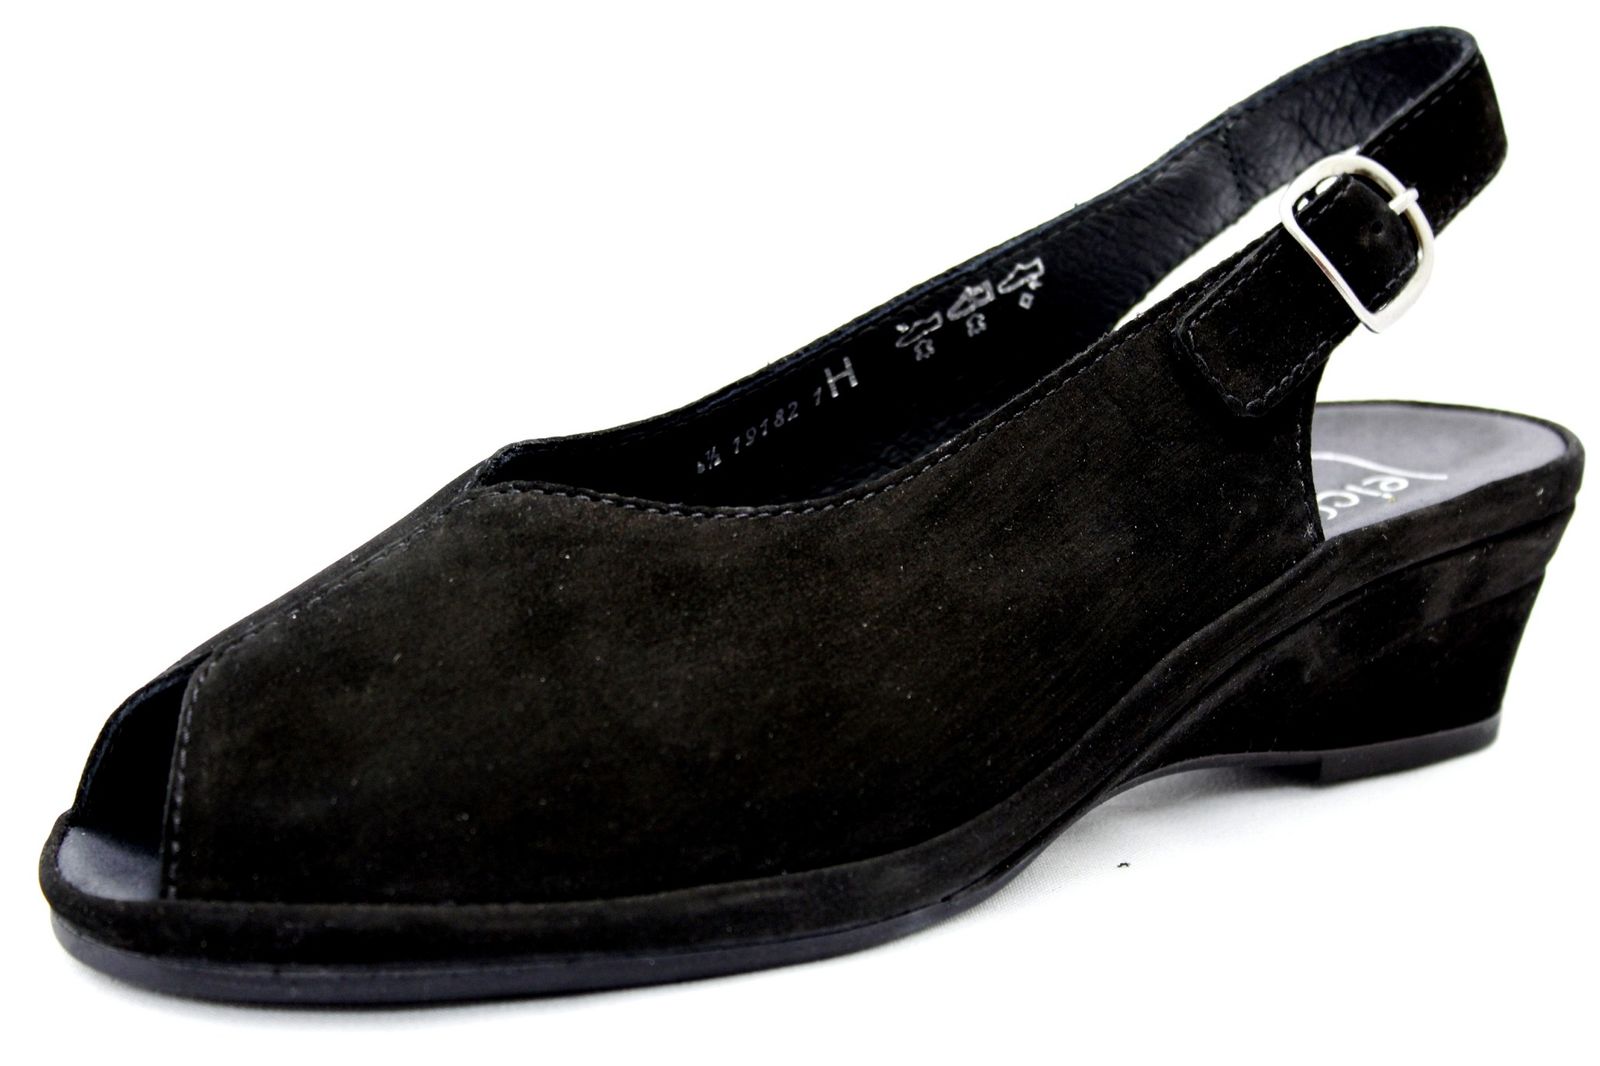 Schuh von Semler, 7